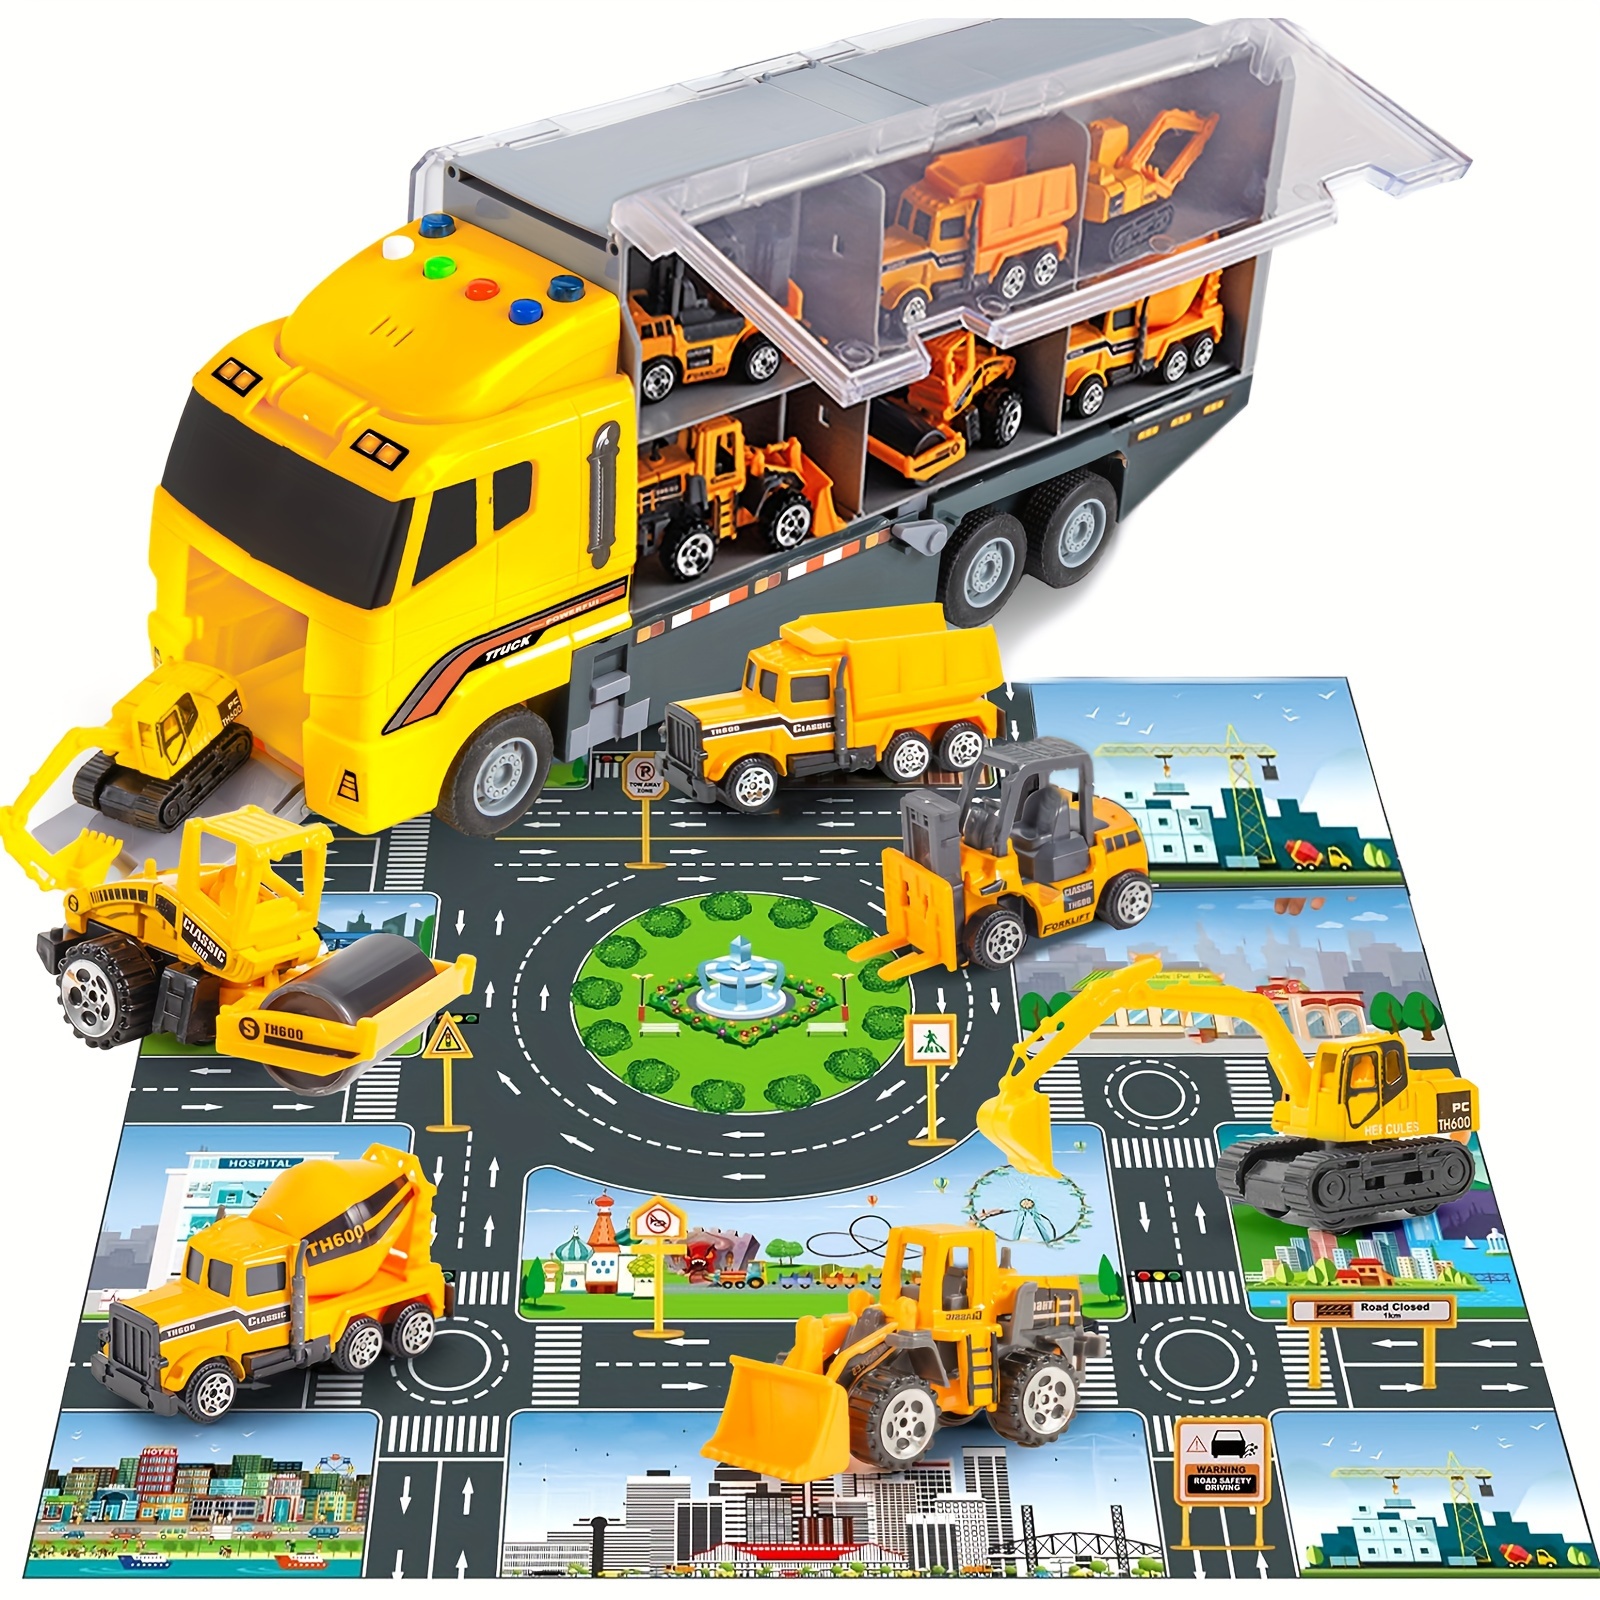 TEMI Juguetes para niños de 3, 4, 5, 6 años, juguetes de construcción  fundidos a presión, coche con retroceso, excavadora 4 en 1, excavadora